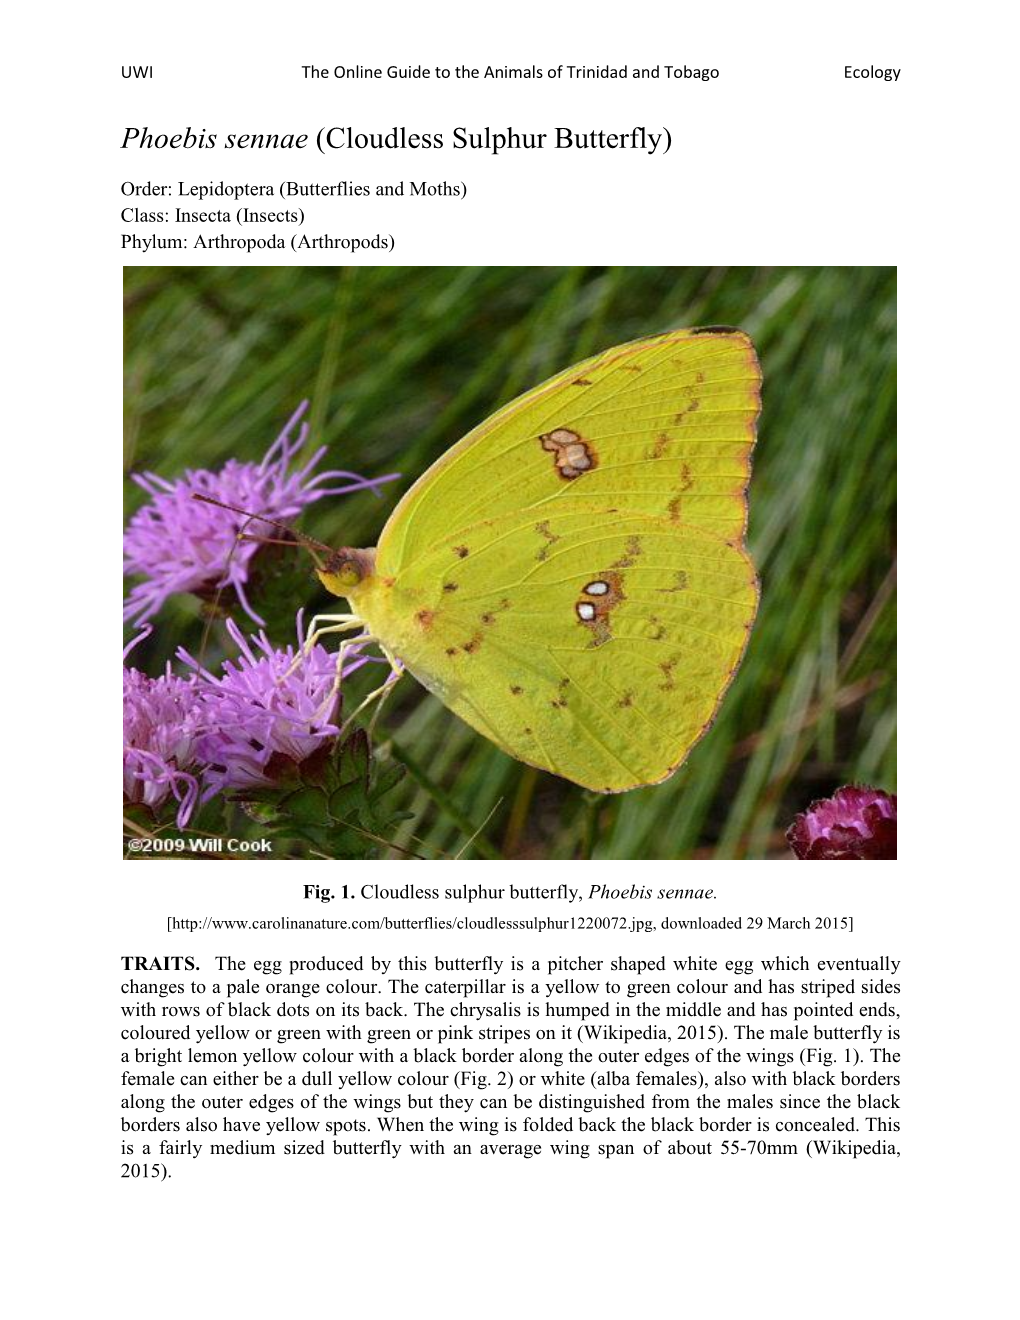 Phoebis Sennae (Cloudless Sulphur Butterfly)